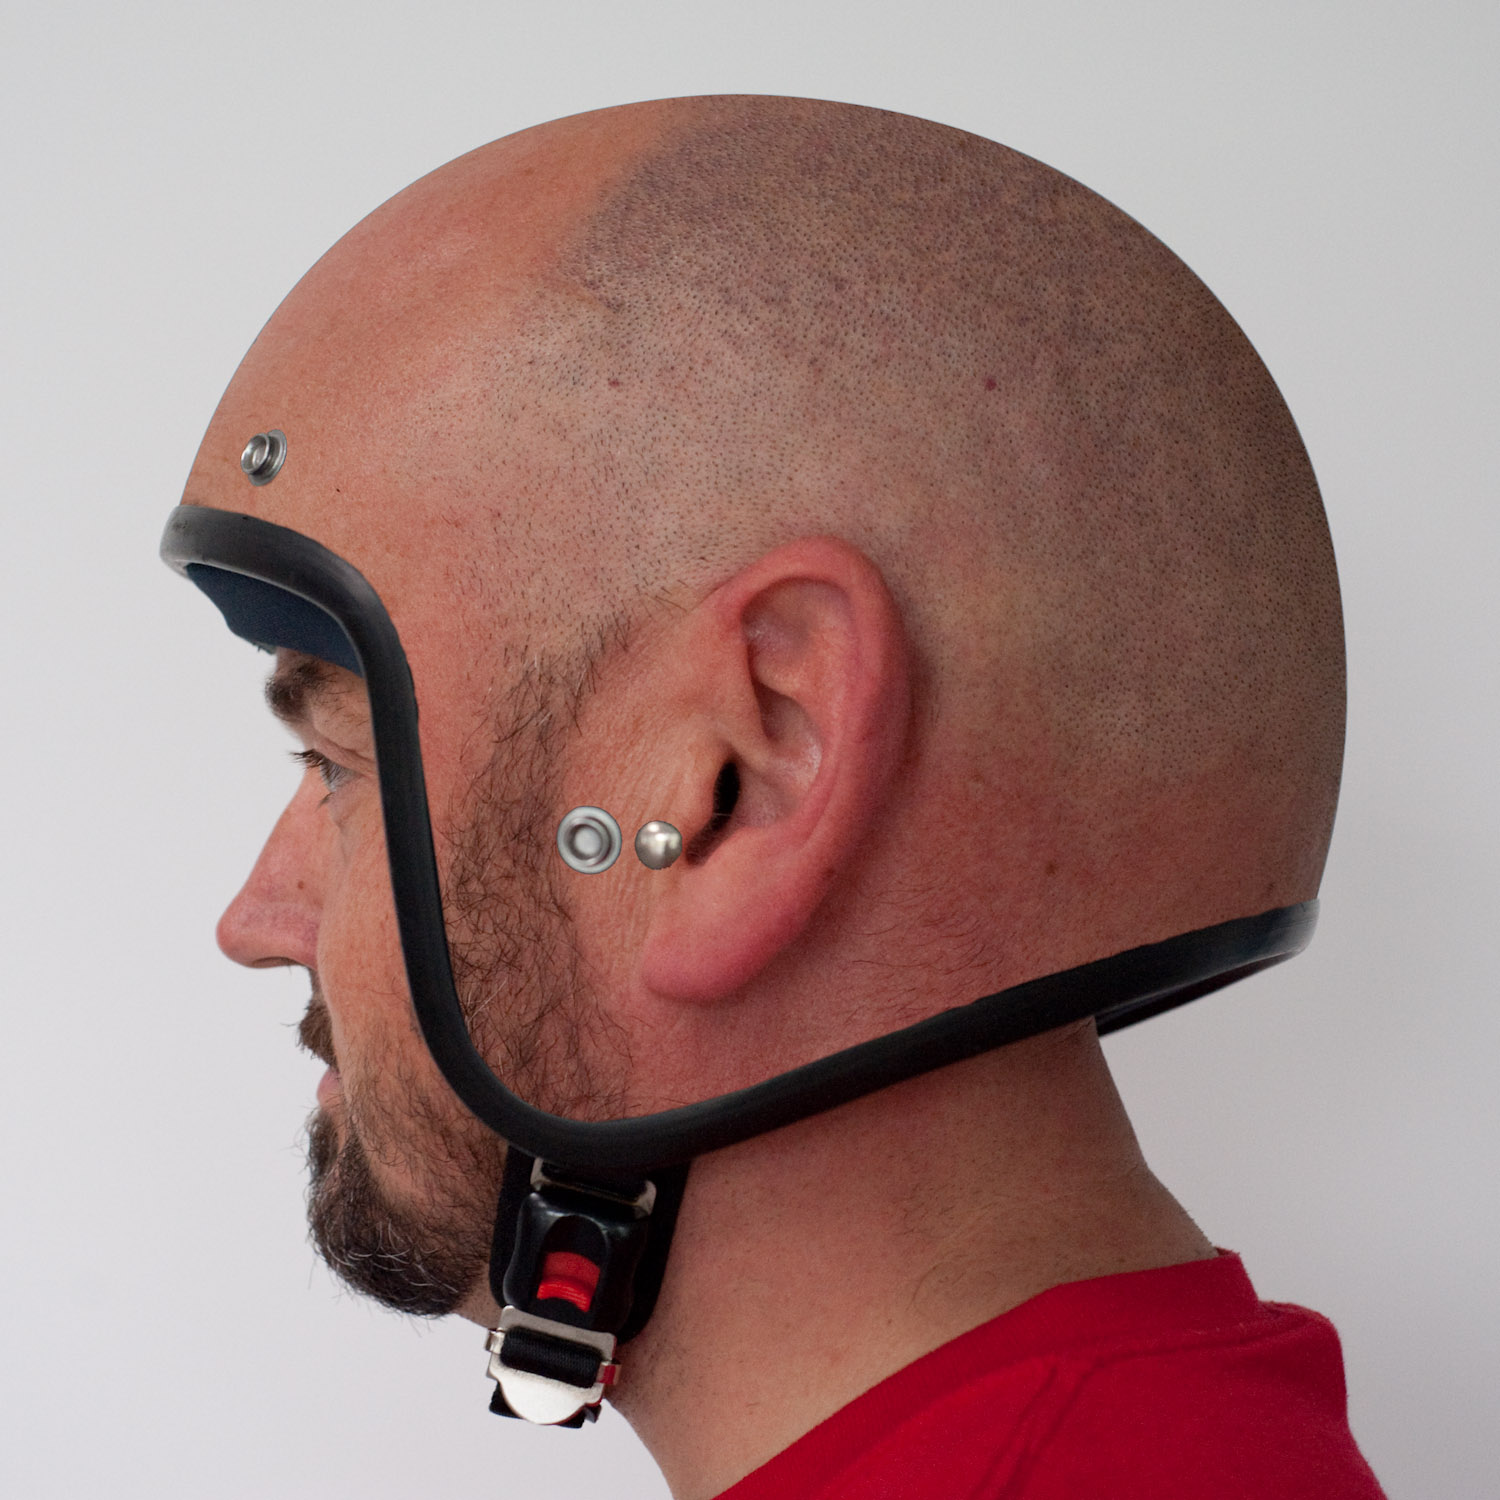 bald-head-helmet-bike-motorbike-14037887511.jpg